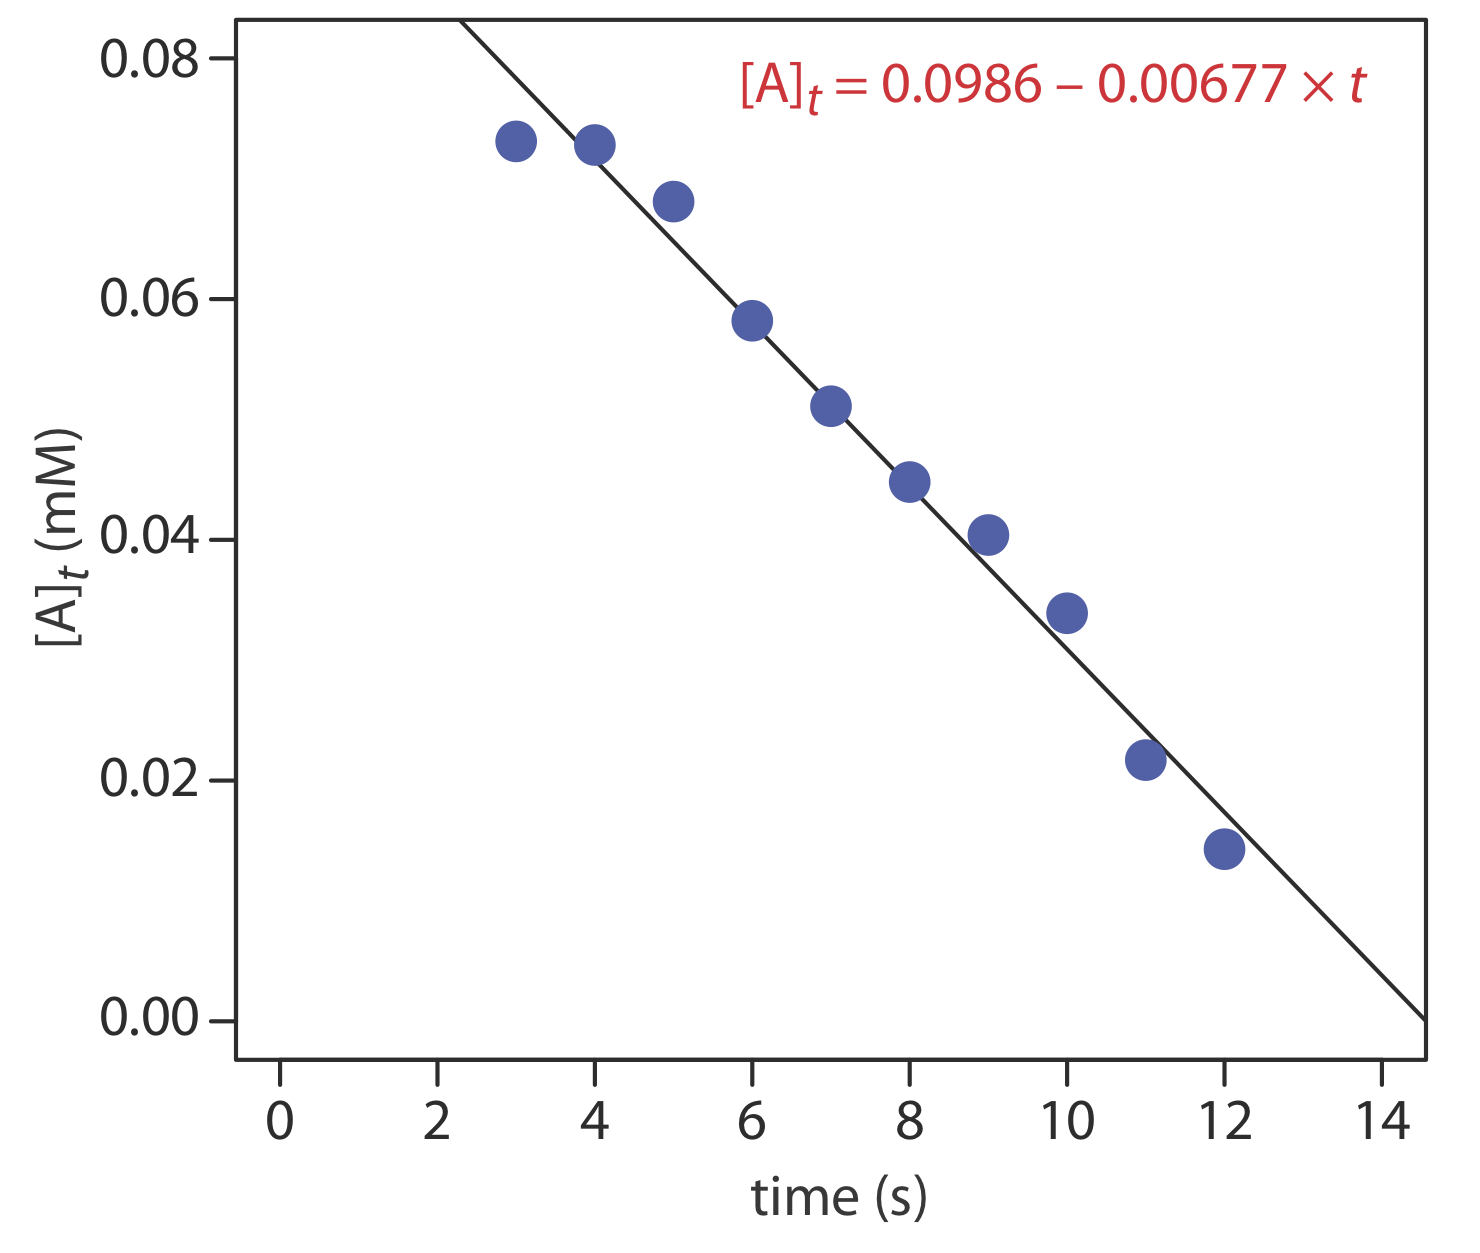 Gráfica de tiempo en segundos versus concentración de A en el tiempo “t” en milimolar. Concentración de A en el tiempo “t” = 0.0986-0.00677*t.